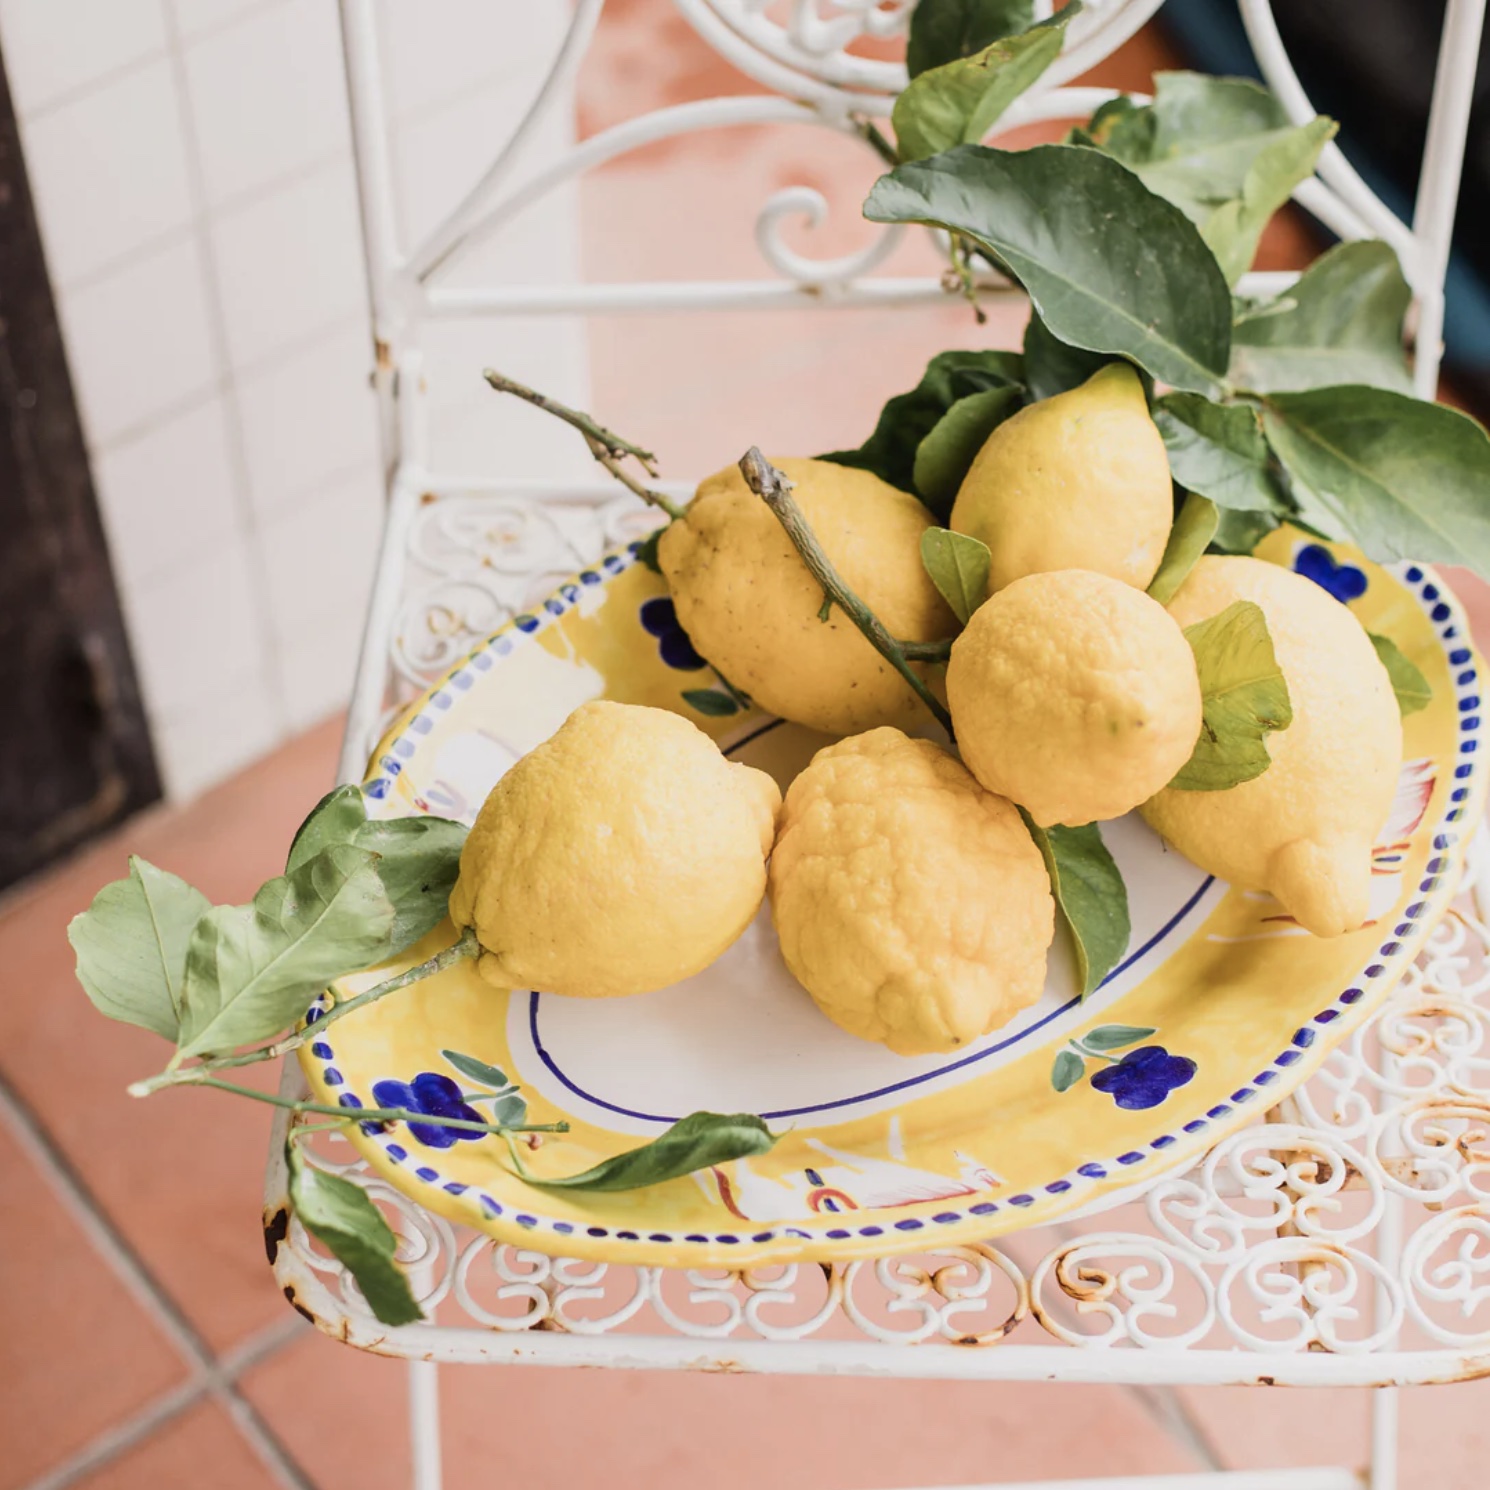 Plate of Lemons